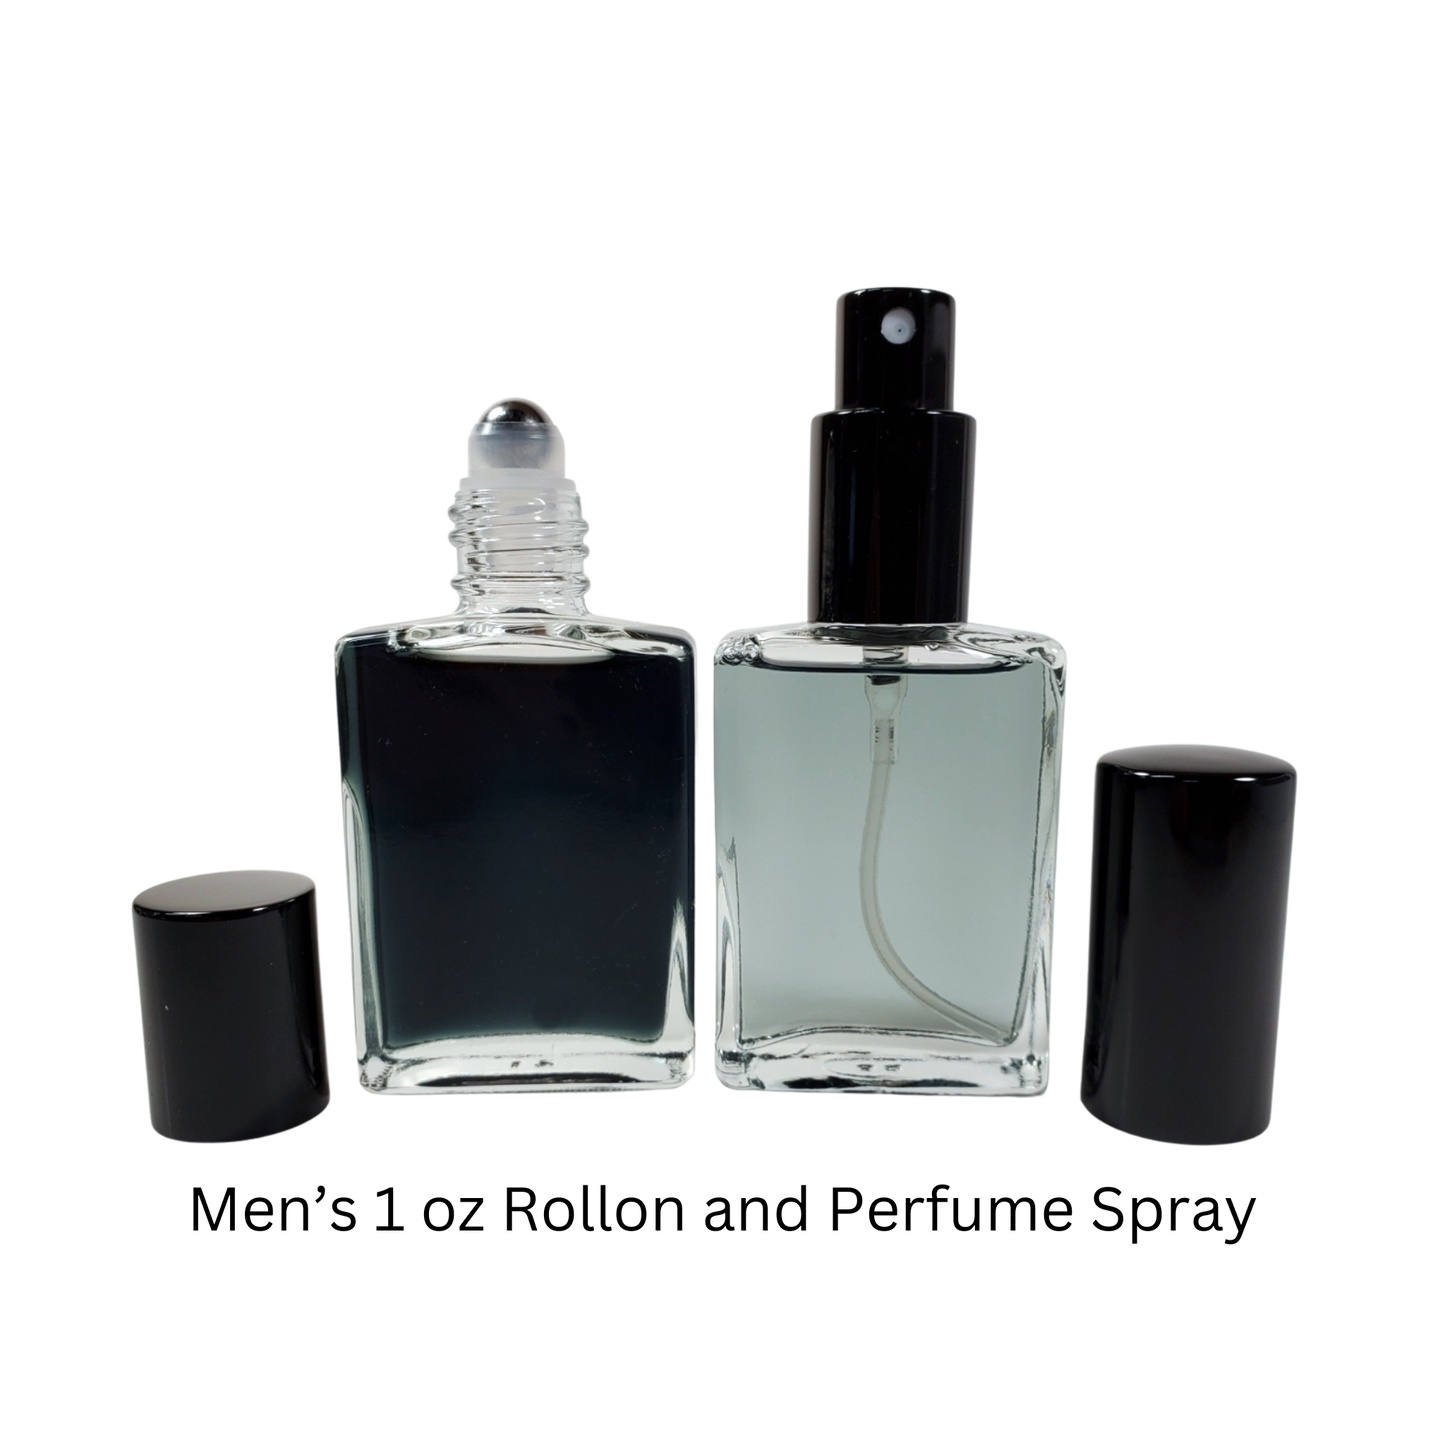 Gentleman Society Type* / Cologne Body Oil / Eau de Parfum